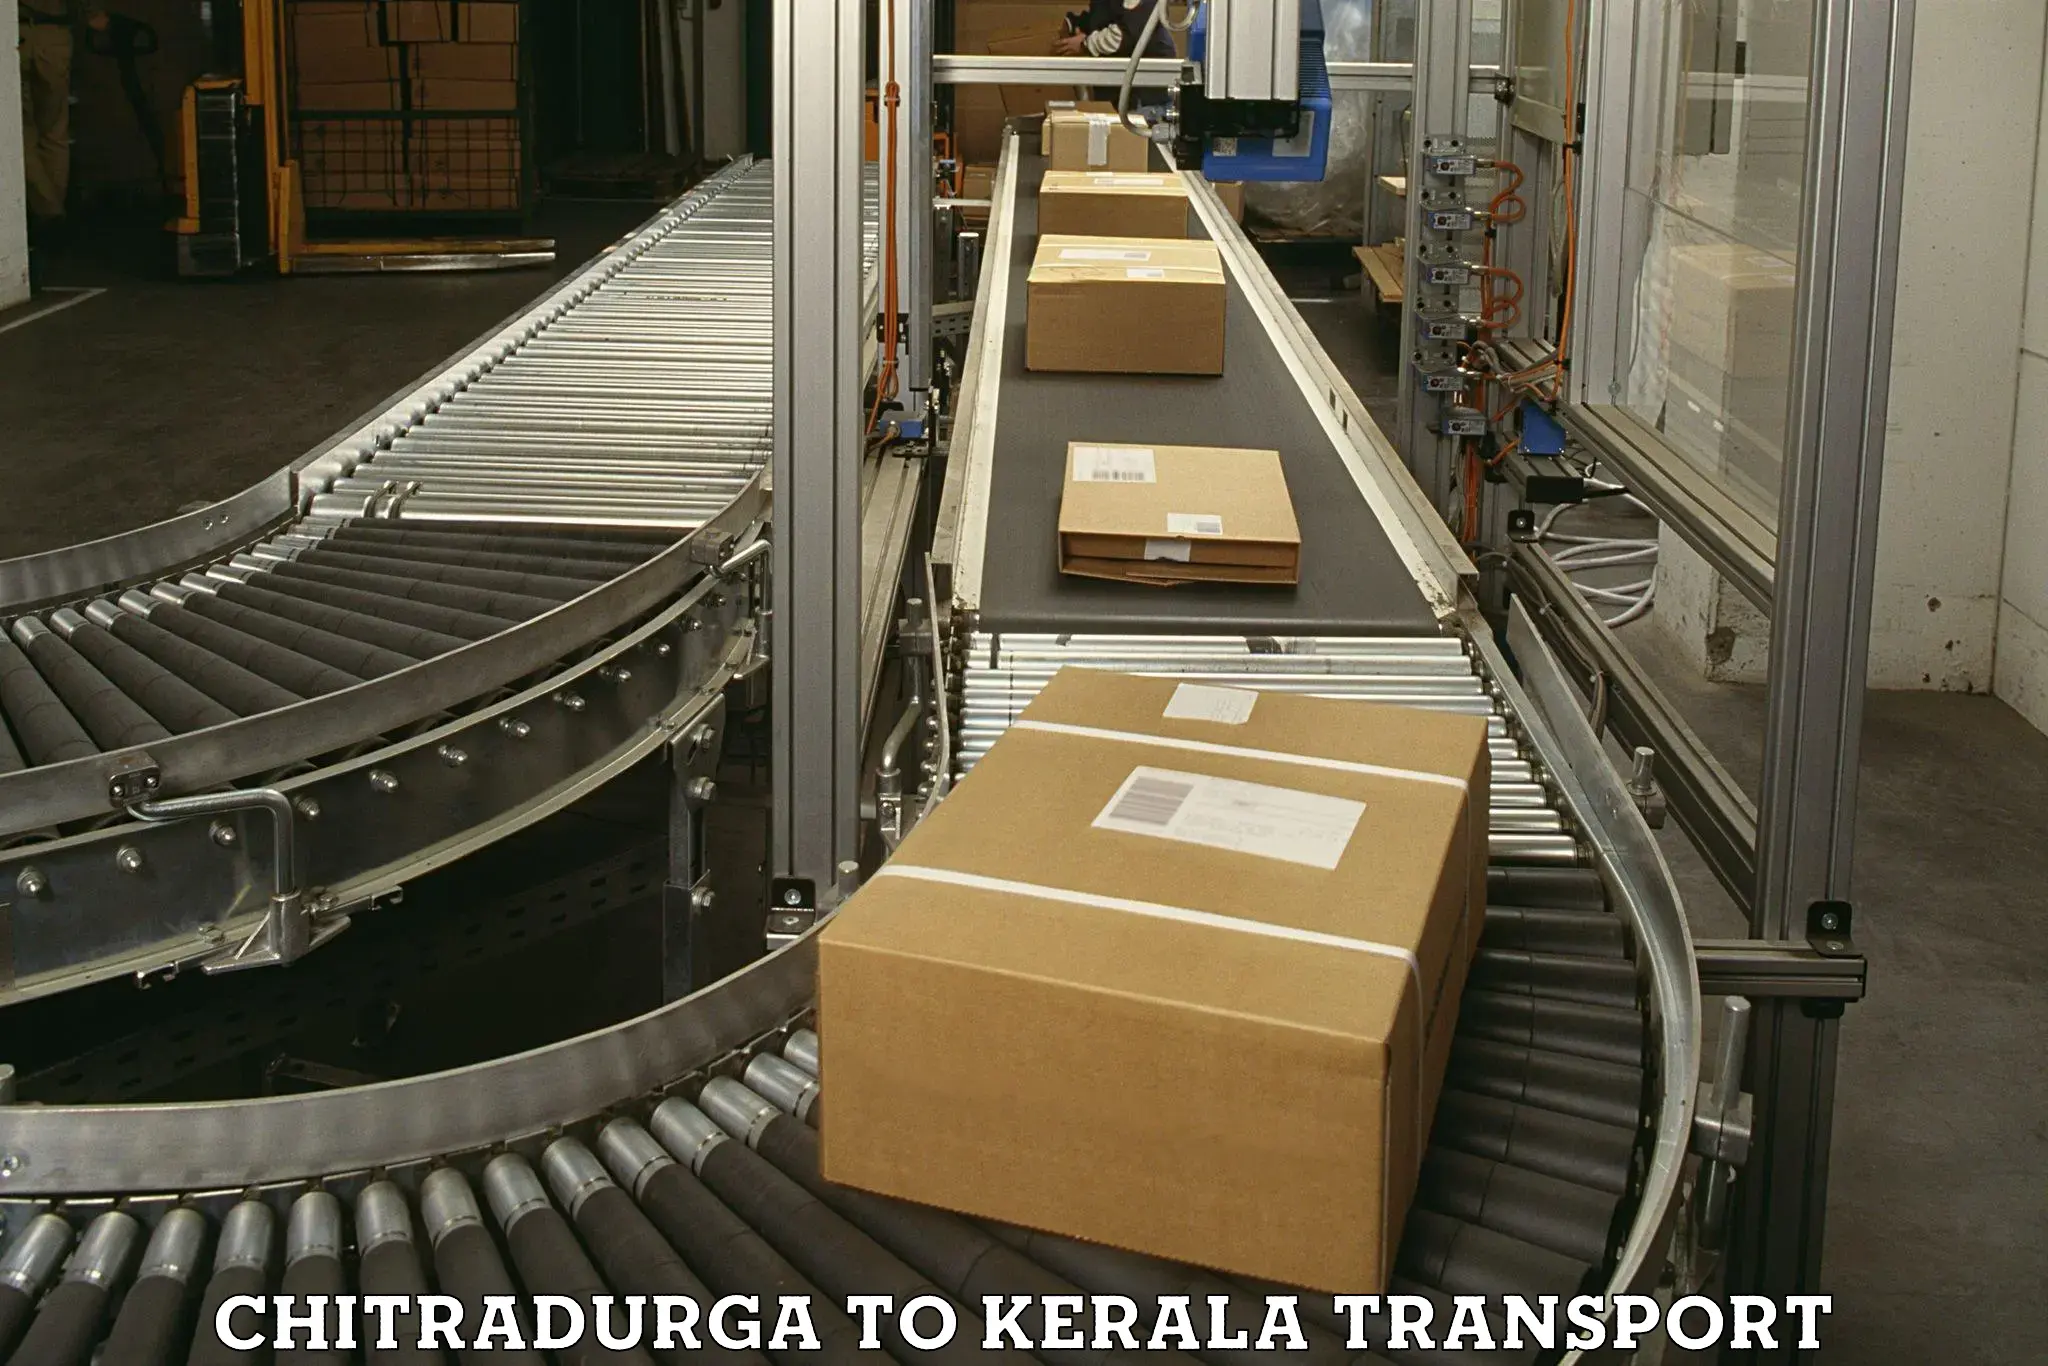 Commercial transport service Chitradurga to Kasaragod